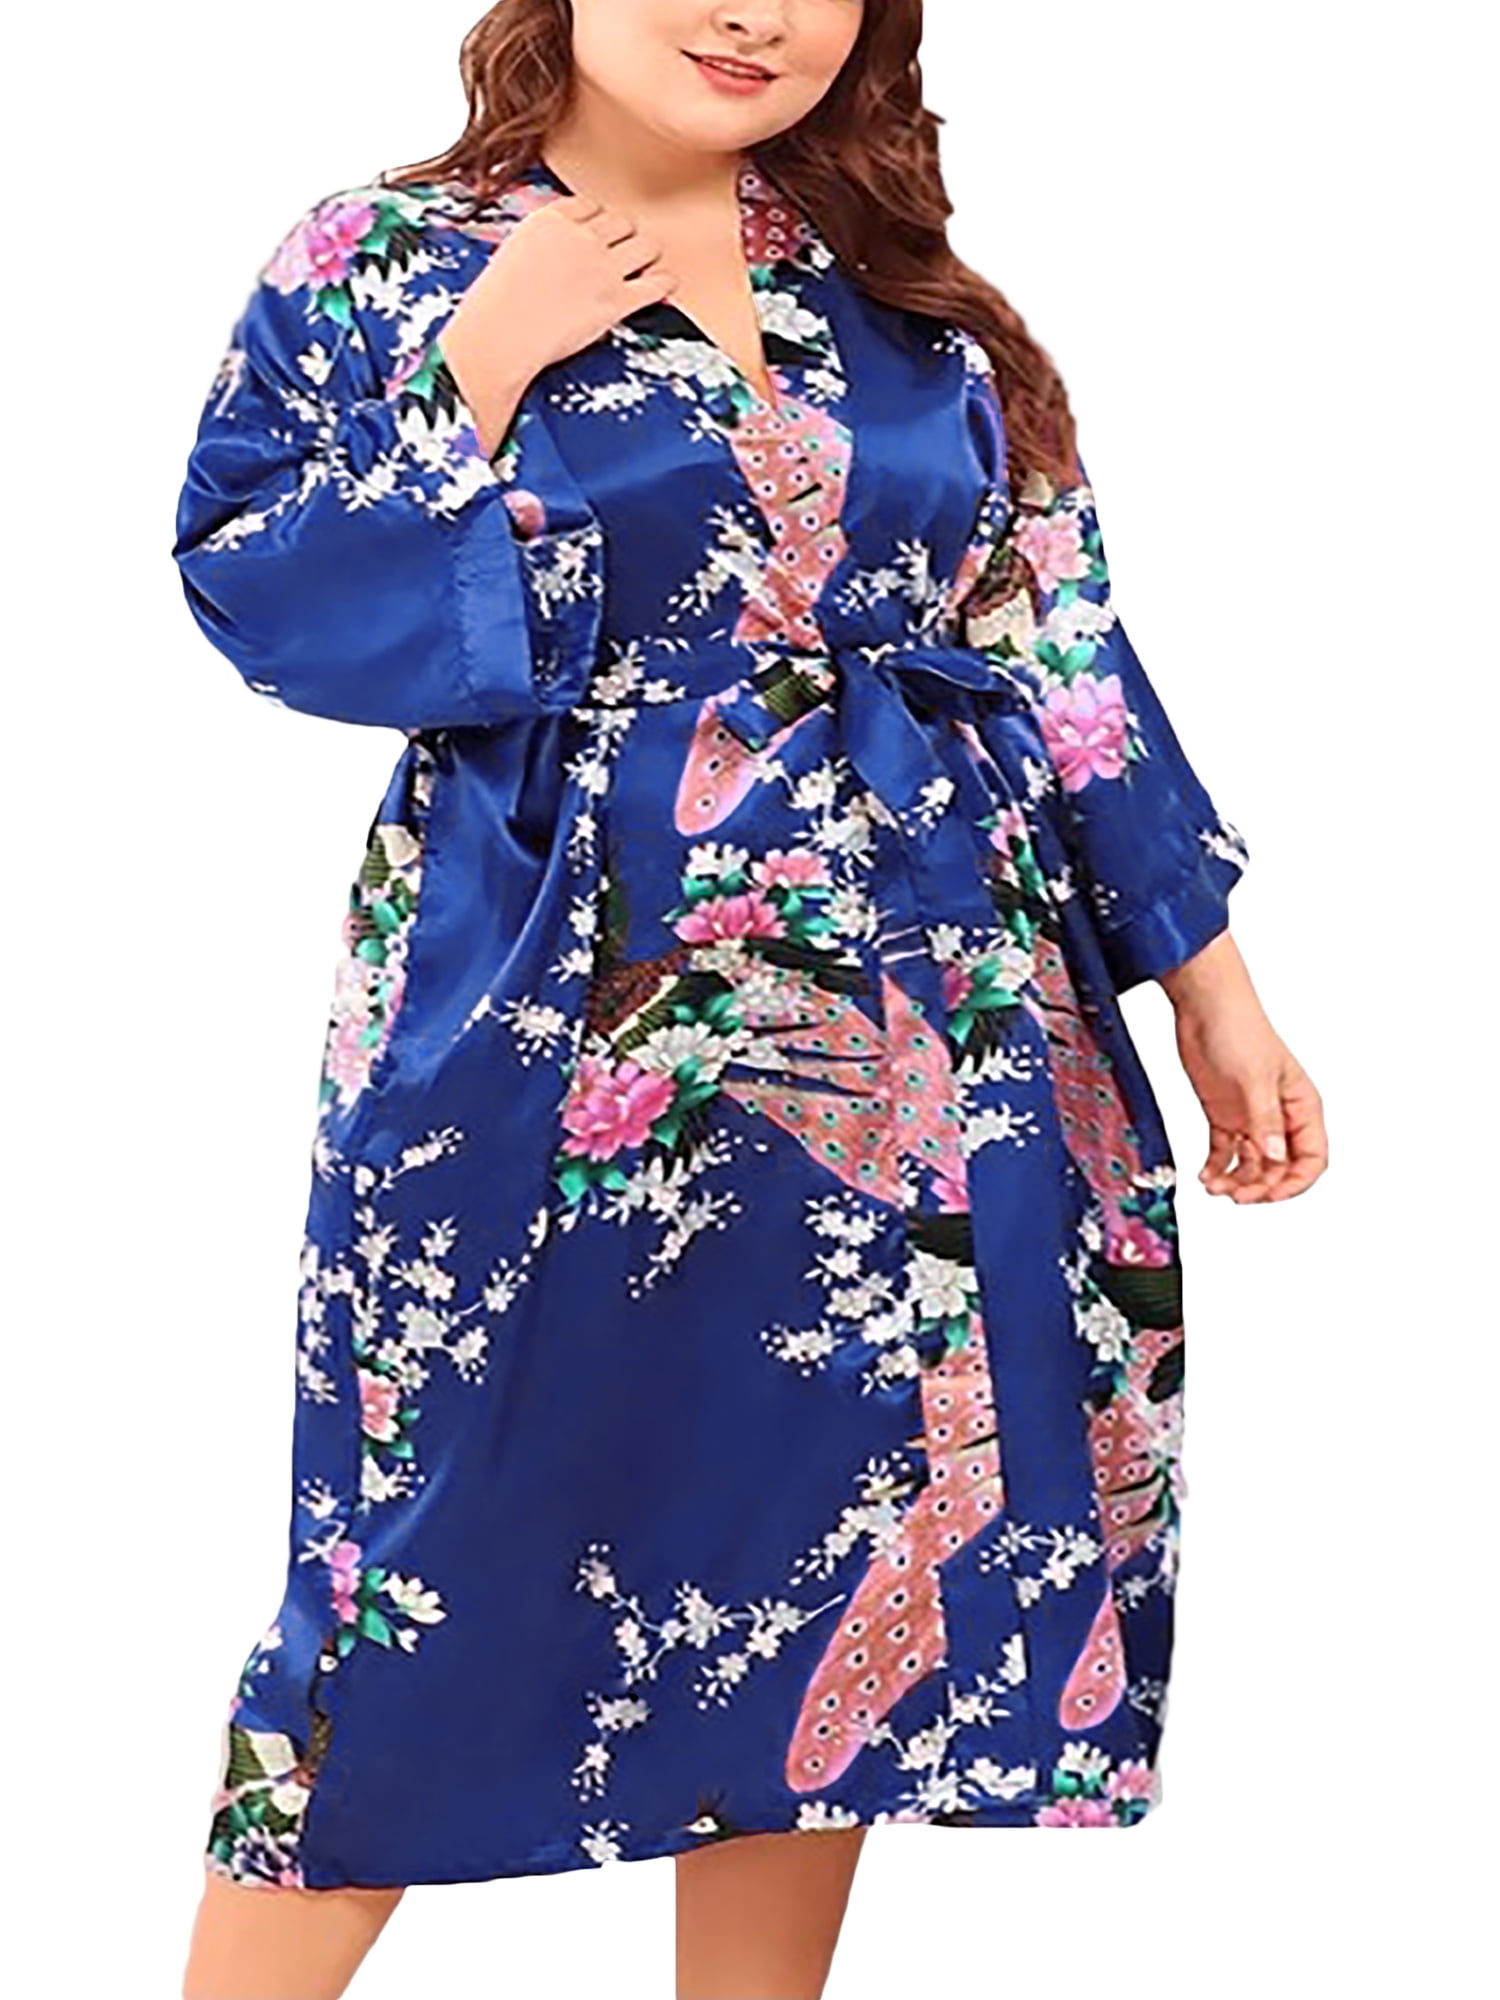 Lounge Robe Women Cotton Satin Kimono Robe Plus Size Floral Lingerie Sleep Robes for Bridge Short 